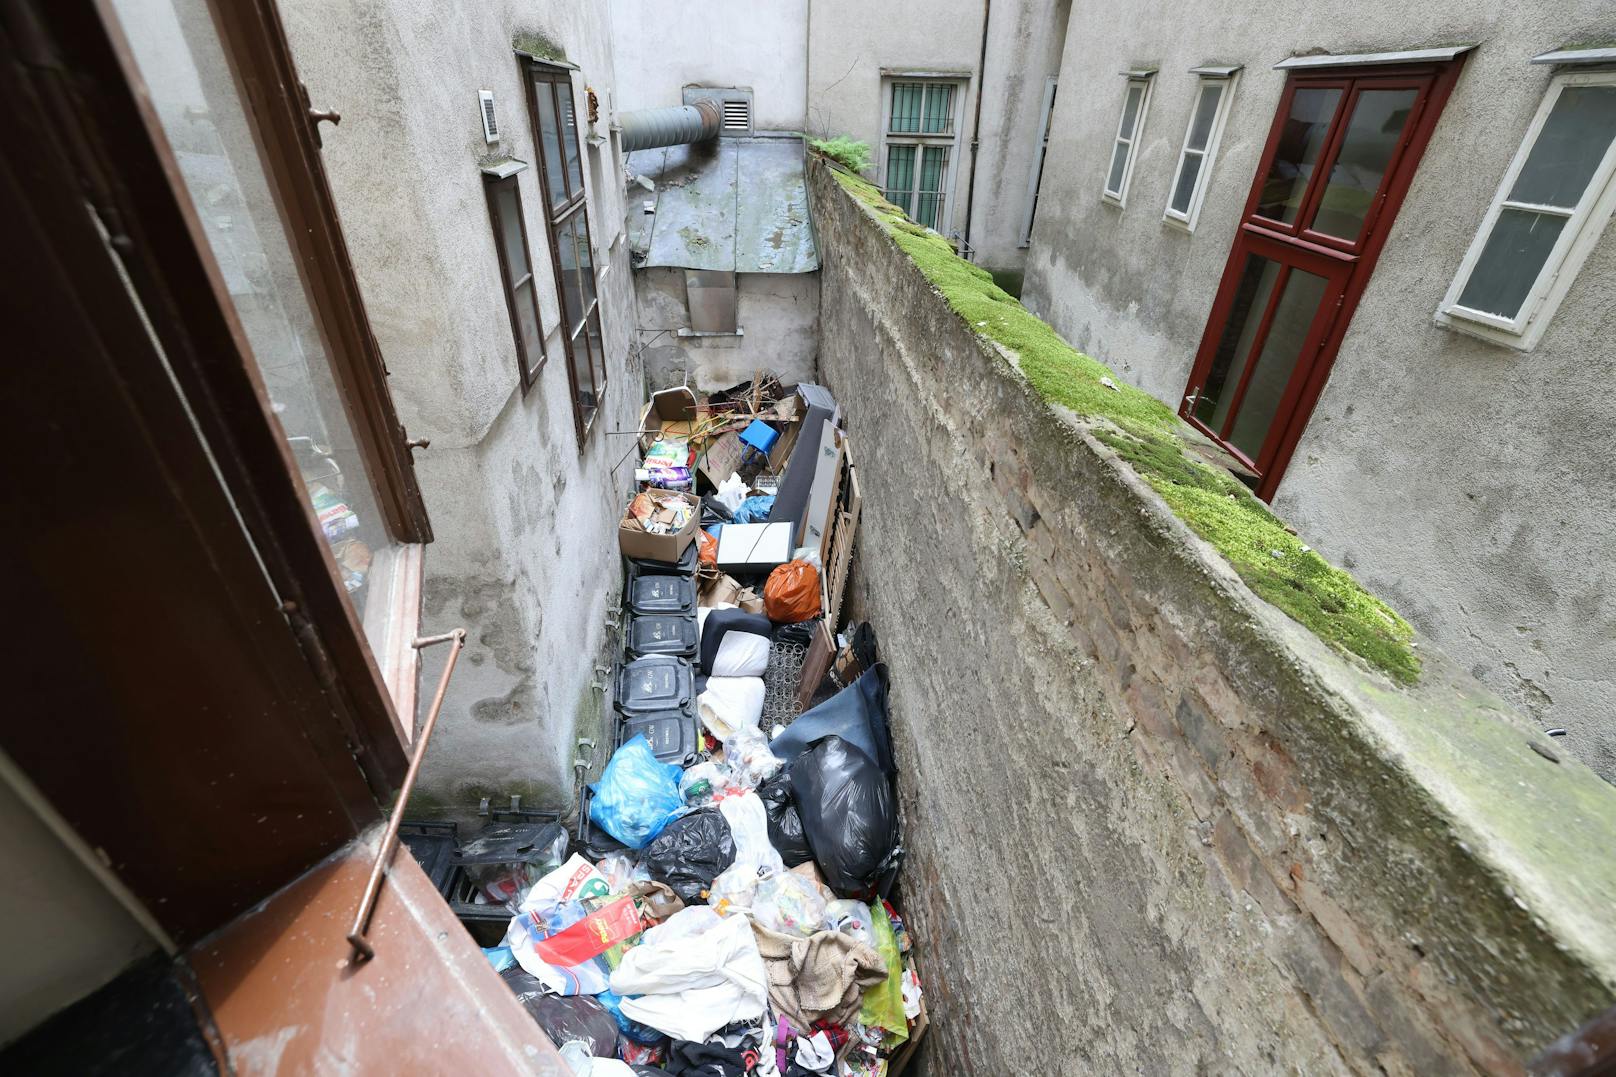 "Stinkt unerträglich" – Mieter lebten auf Müllhalde